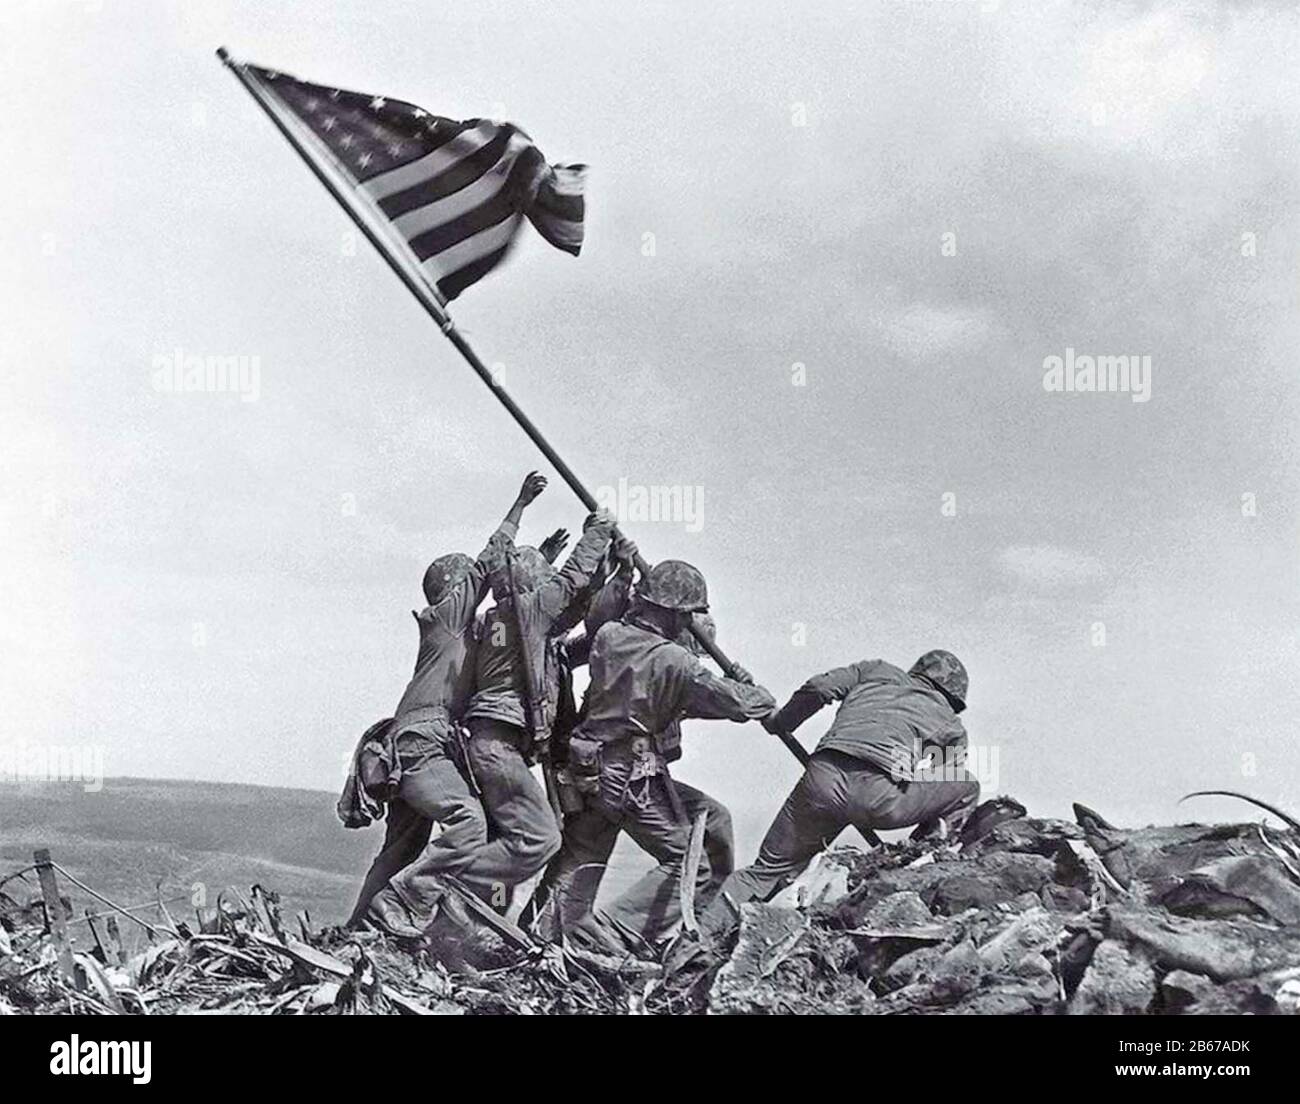 SCHLACHT VON IWO JIMA FEBRUAR-MÄRZ 1945. "Raising the Flag on Iwo Jima" 23. Februar 1945 von Associated Press Fotograf Joe Rosenthal. Stockfoto